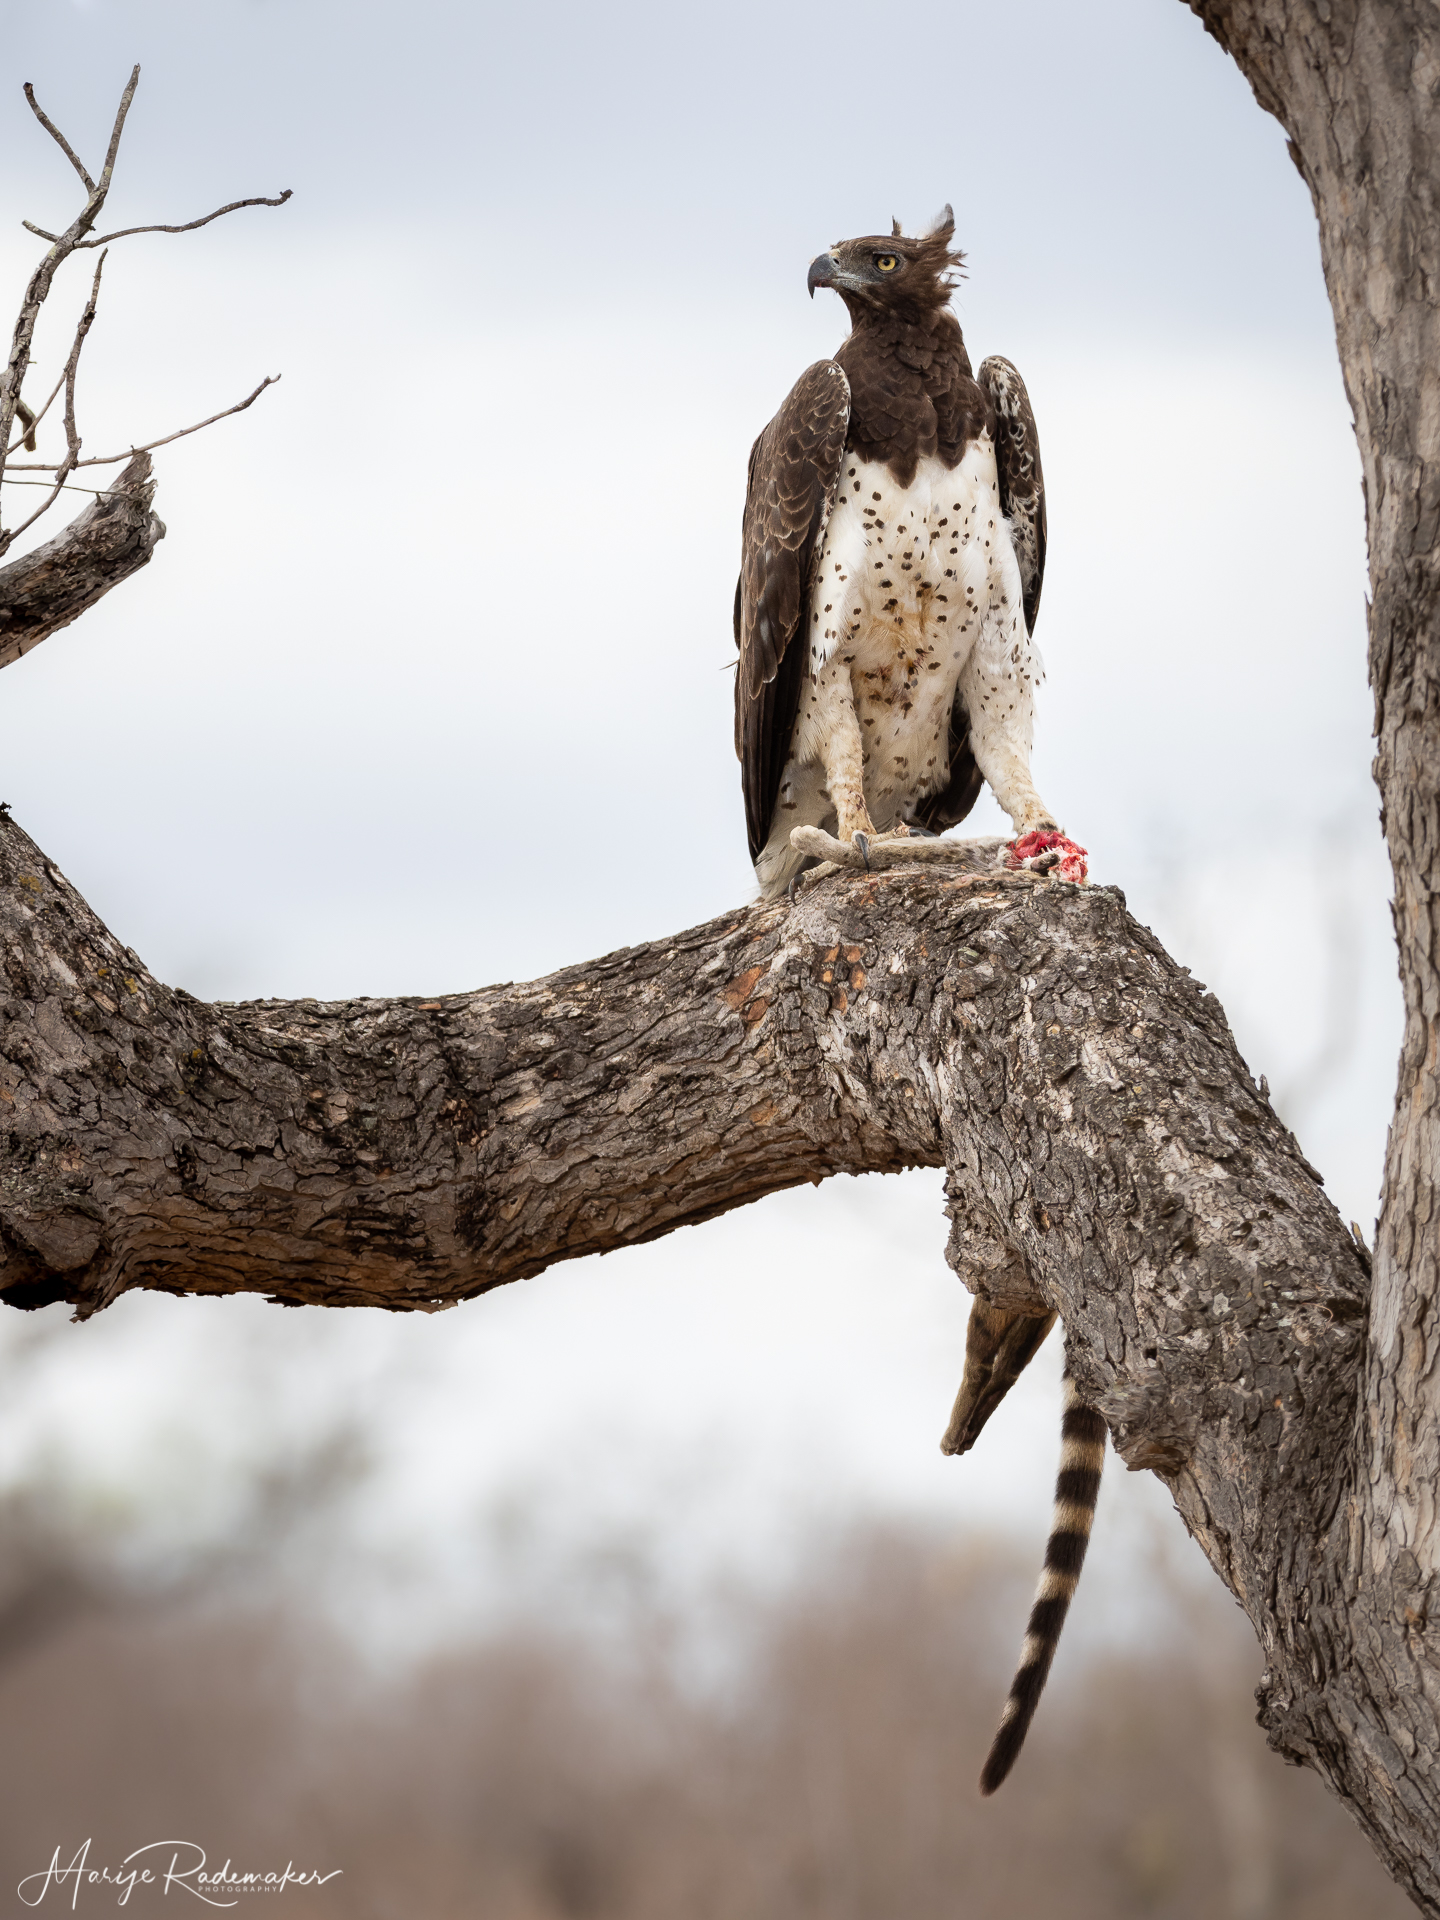 Captured at Kruger NP on 02 Oct, 2019 by Marije Rademaker